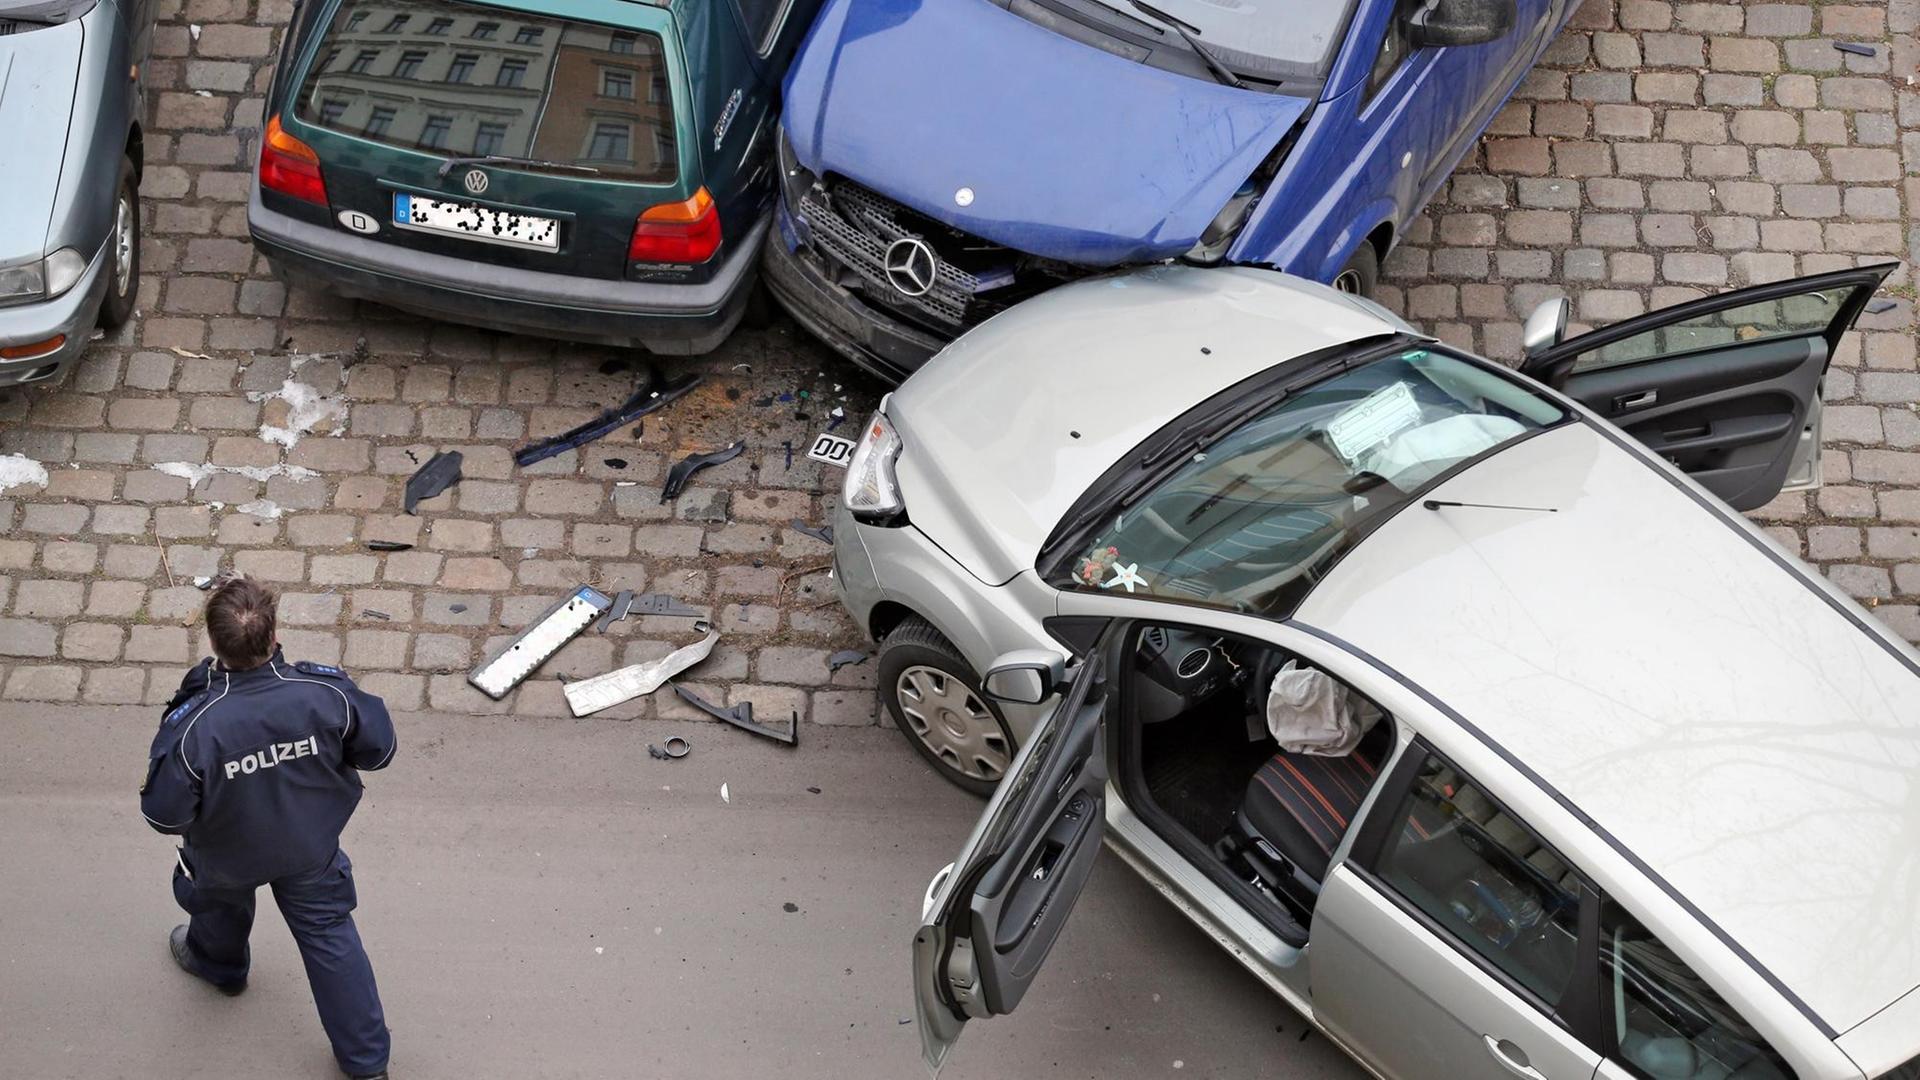 Ein Polizist nimmt am 29.01.2014 einen Verkehrsunfall an dem ein Ford Focus, ein VW Golf 3 und ein Mercedes Transporter Viano beteiligt sind in Leipzig (Sachsen) auf. Foto: Jan Woitas | Verwendung weltweit